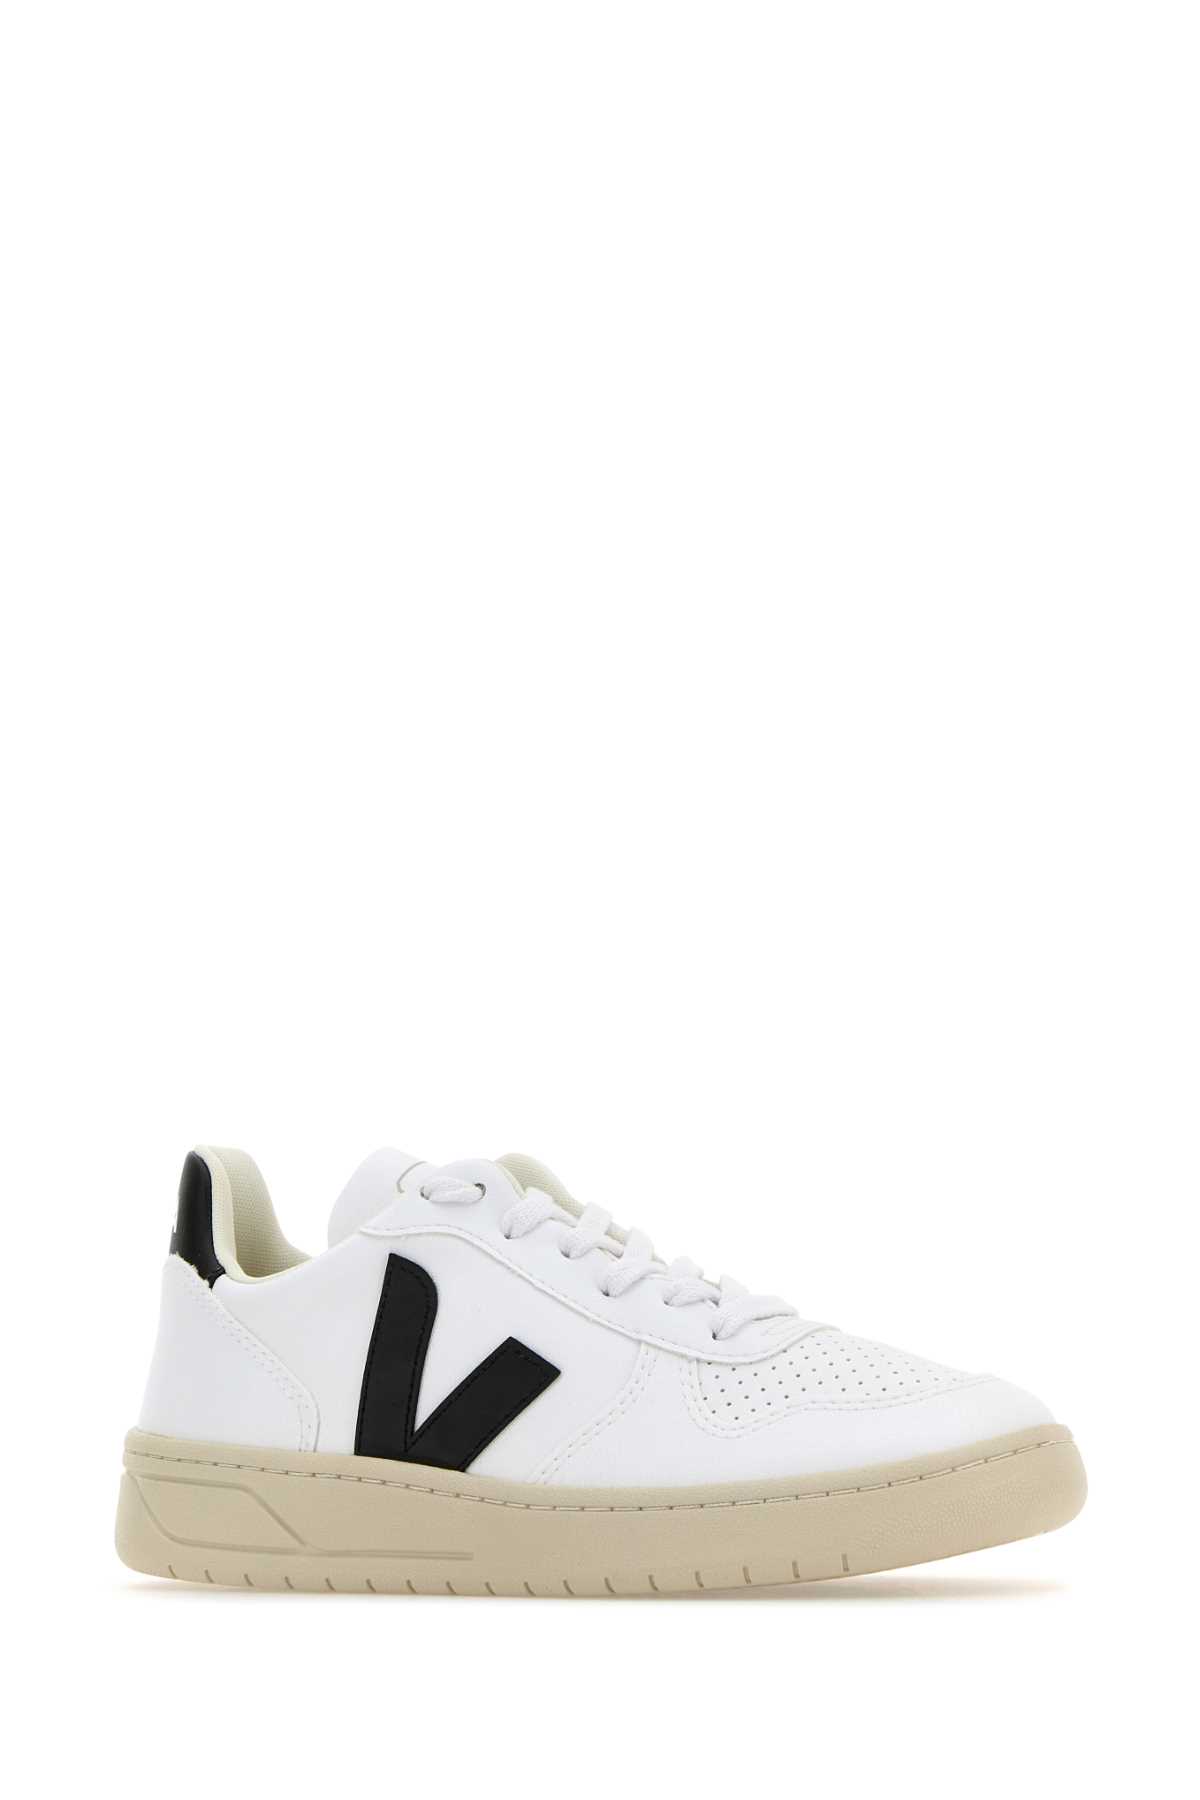 Veja White Leather V-10 Sneakers In Whiteblack